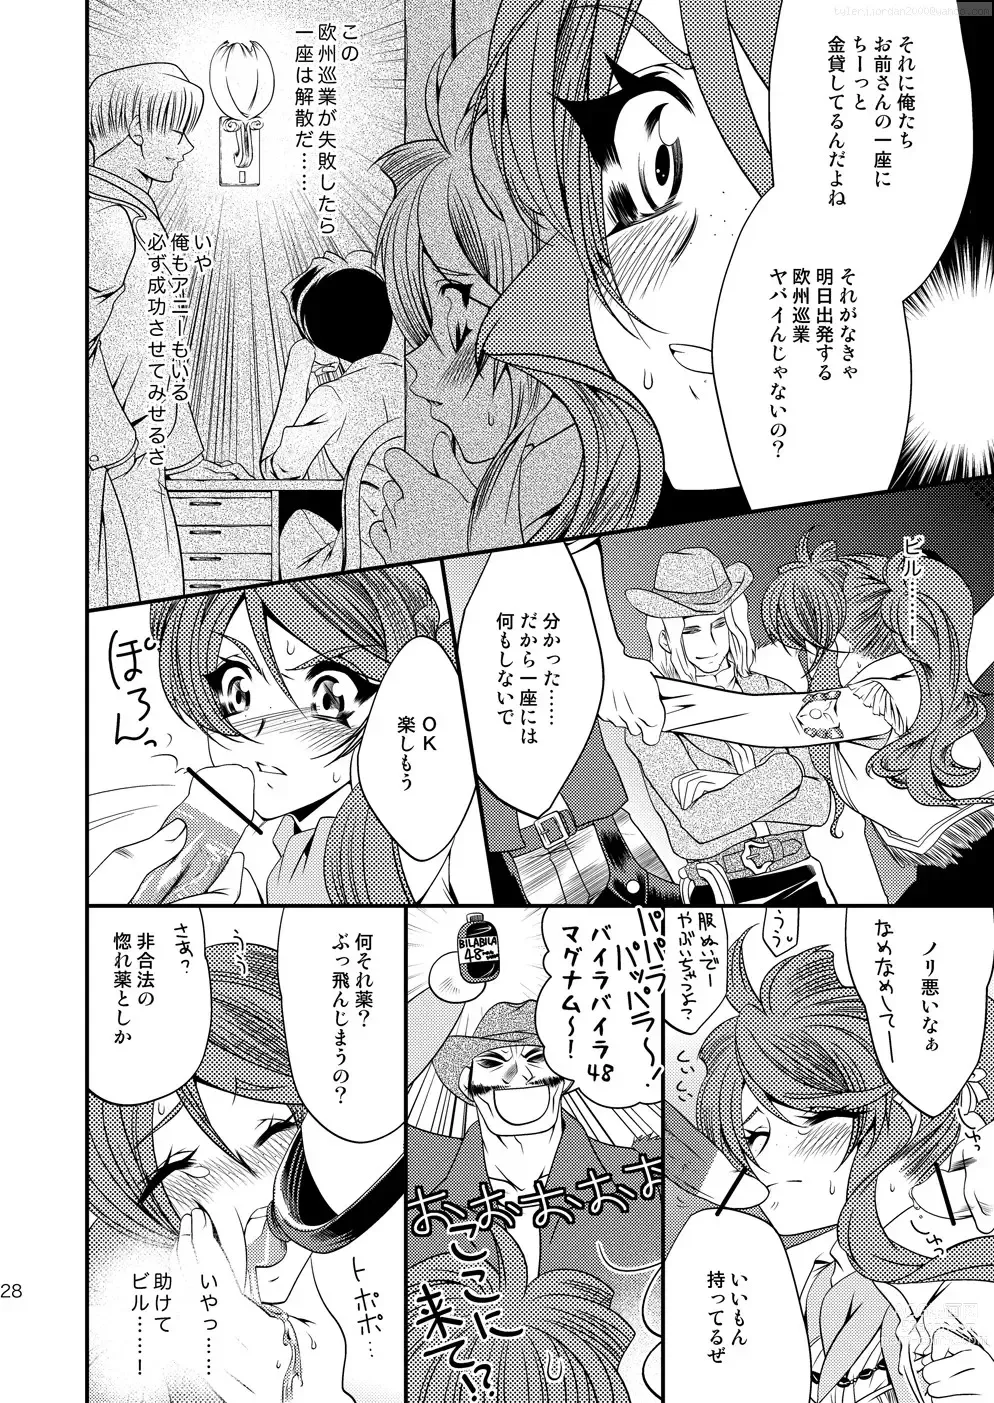 Page 27 of doujinshi Maru Maru Mori Mori na Okusuri no Sei de Gemini-san ga Kiss o Nedaru